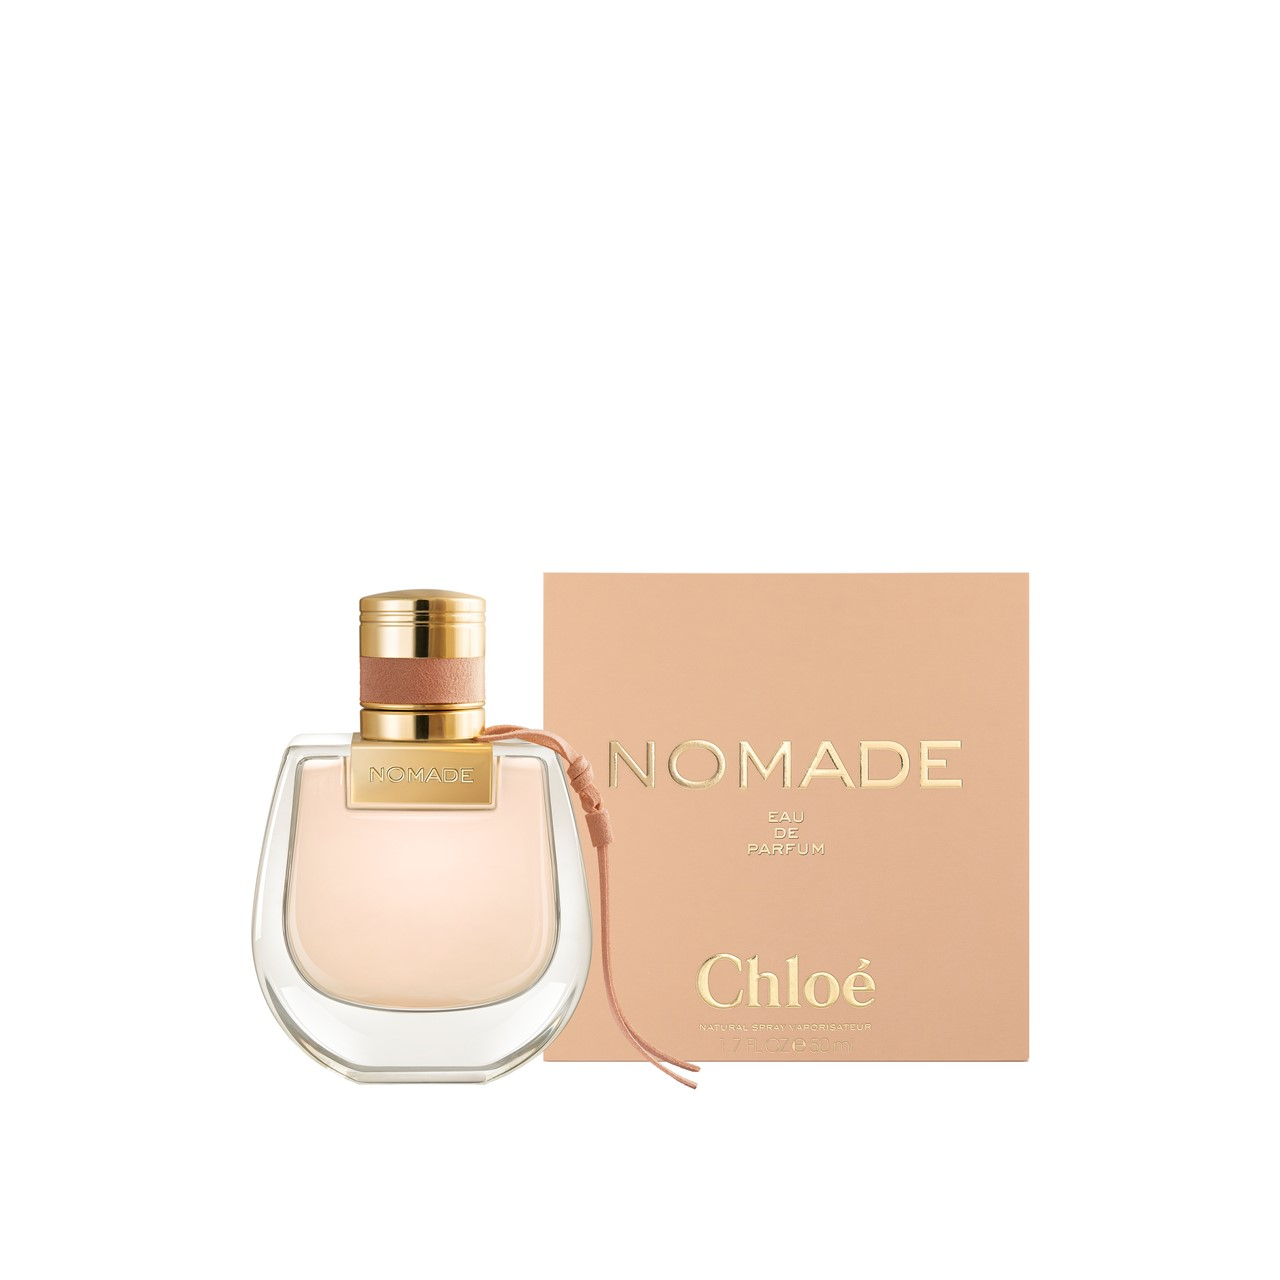 50ml Chloé Buy de oz) Parfum (1.7fl USA Nomade · Eau